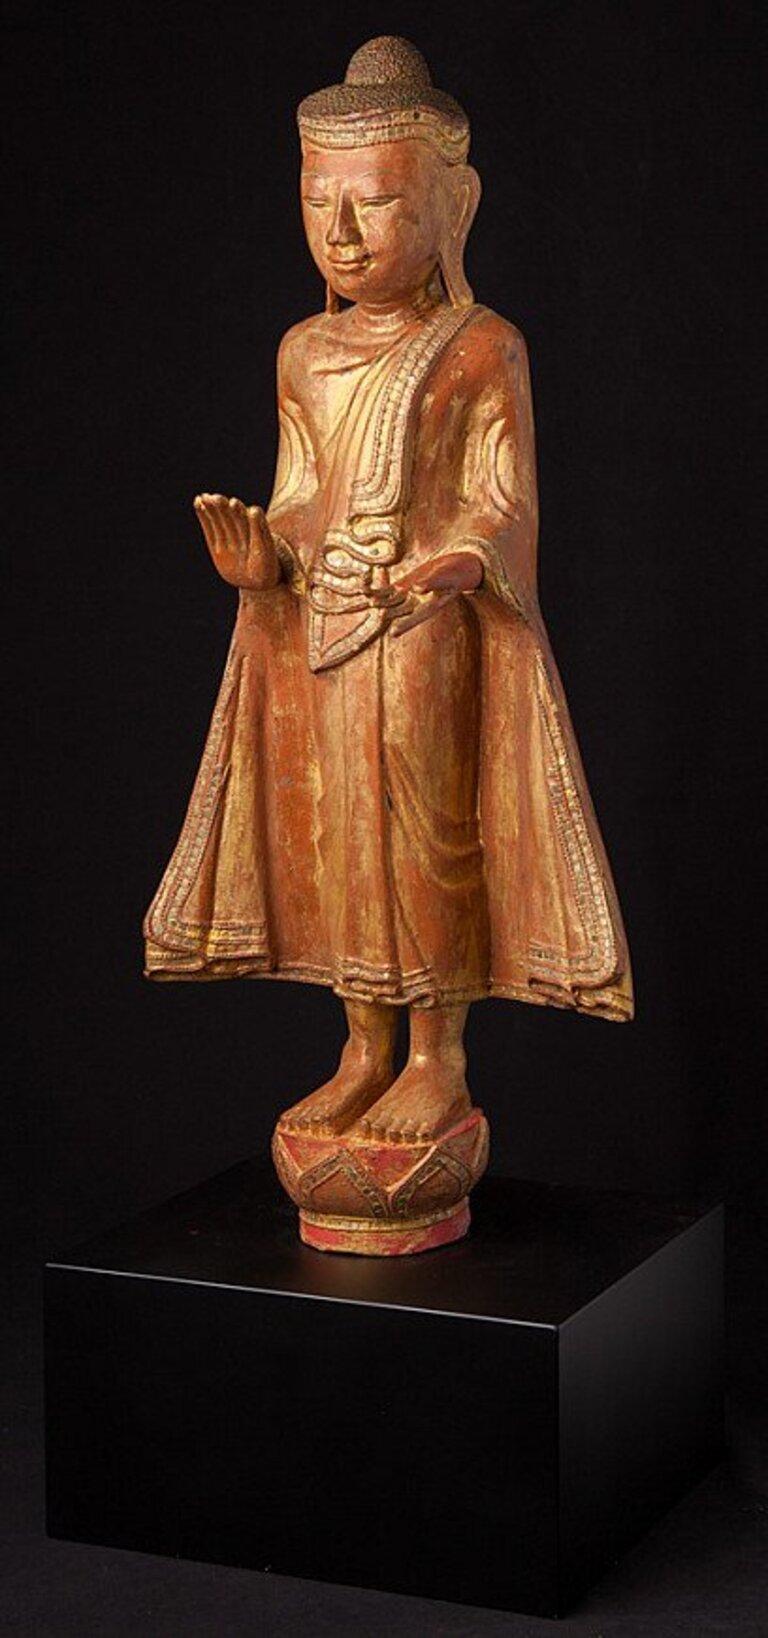 Diese antike hölzerne Buddha-Statue ist ein wirklich einzigartiges und besonderes Sammlerstück. Sie ist 79 cm hoch, 35 cm breit und 25 cm tief, besteht aus Holz und ist mit 24-karätigem Gold vergoldet. Die komplizierten Details der Statue tragen zu